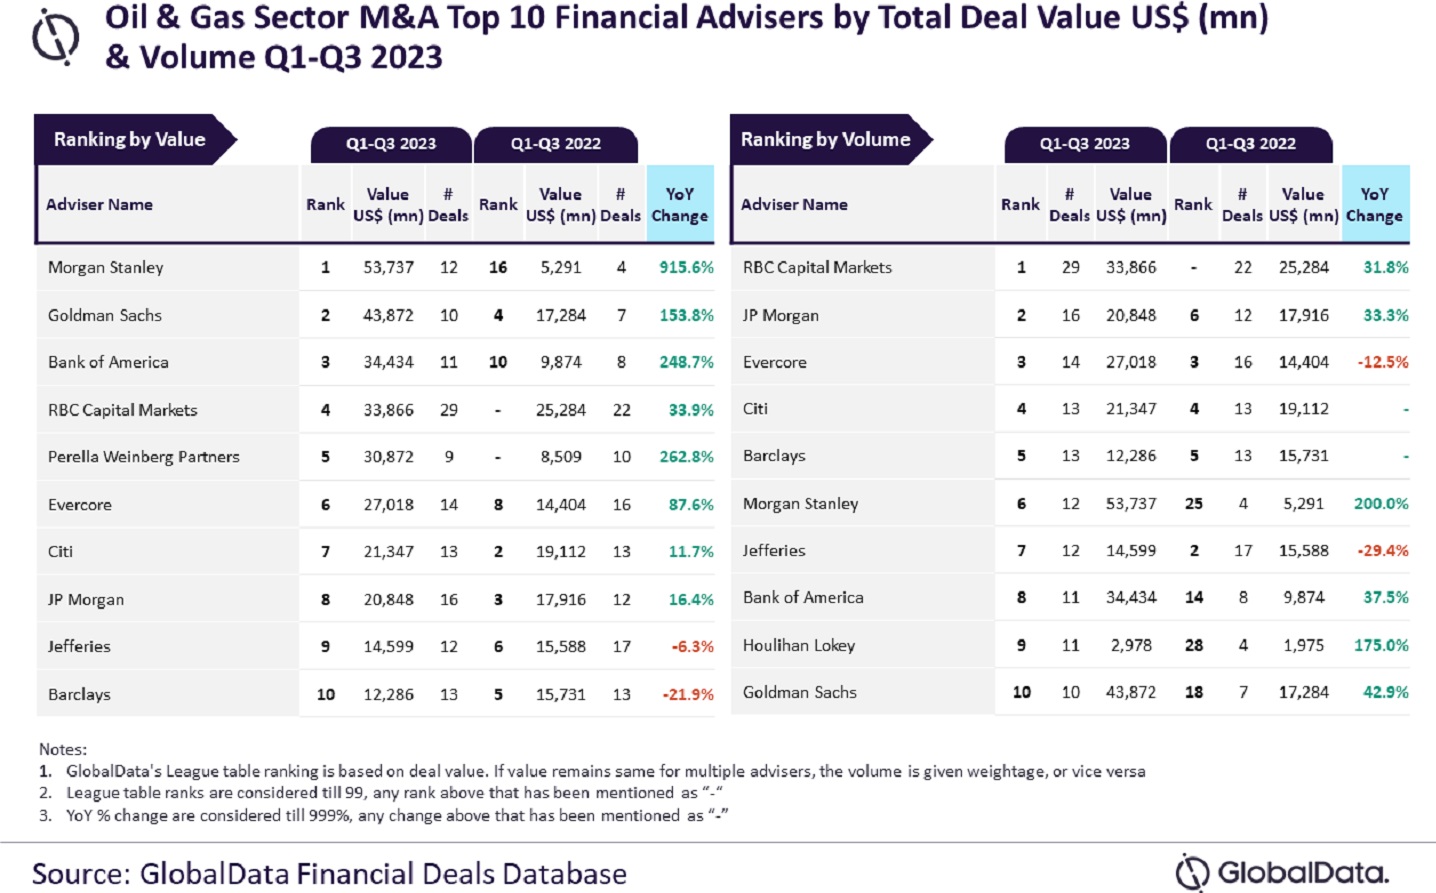 Morgan Stanley, RBC Capital top M&A advisers in Q1-Q3 2023